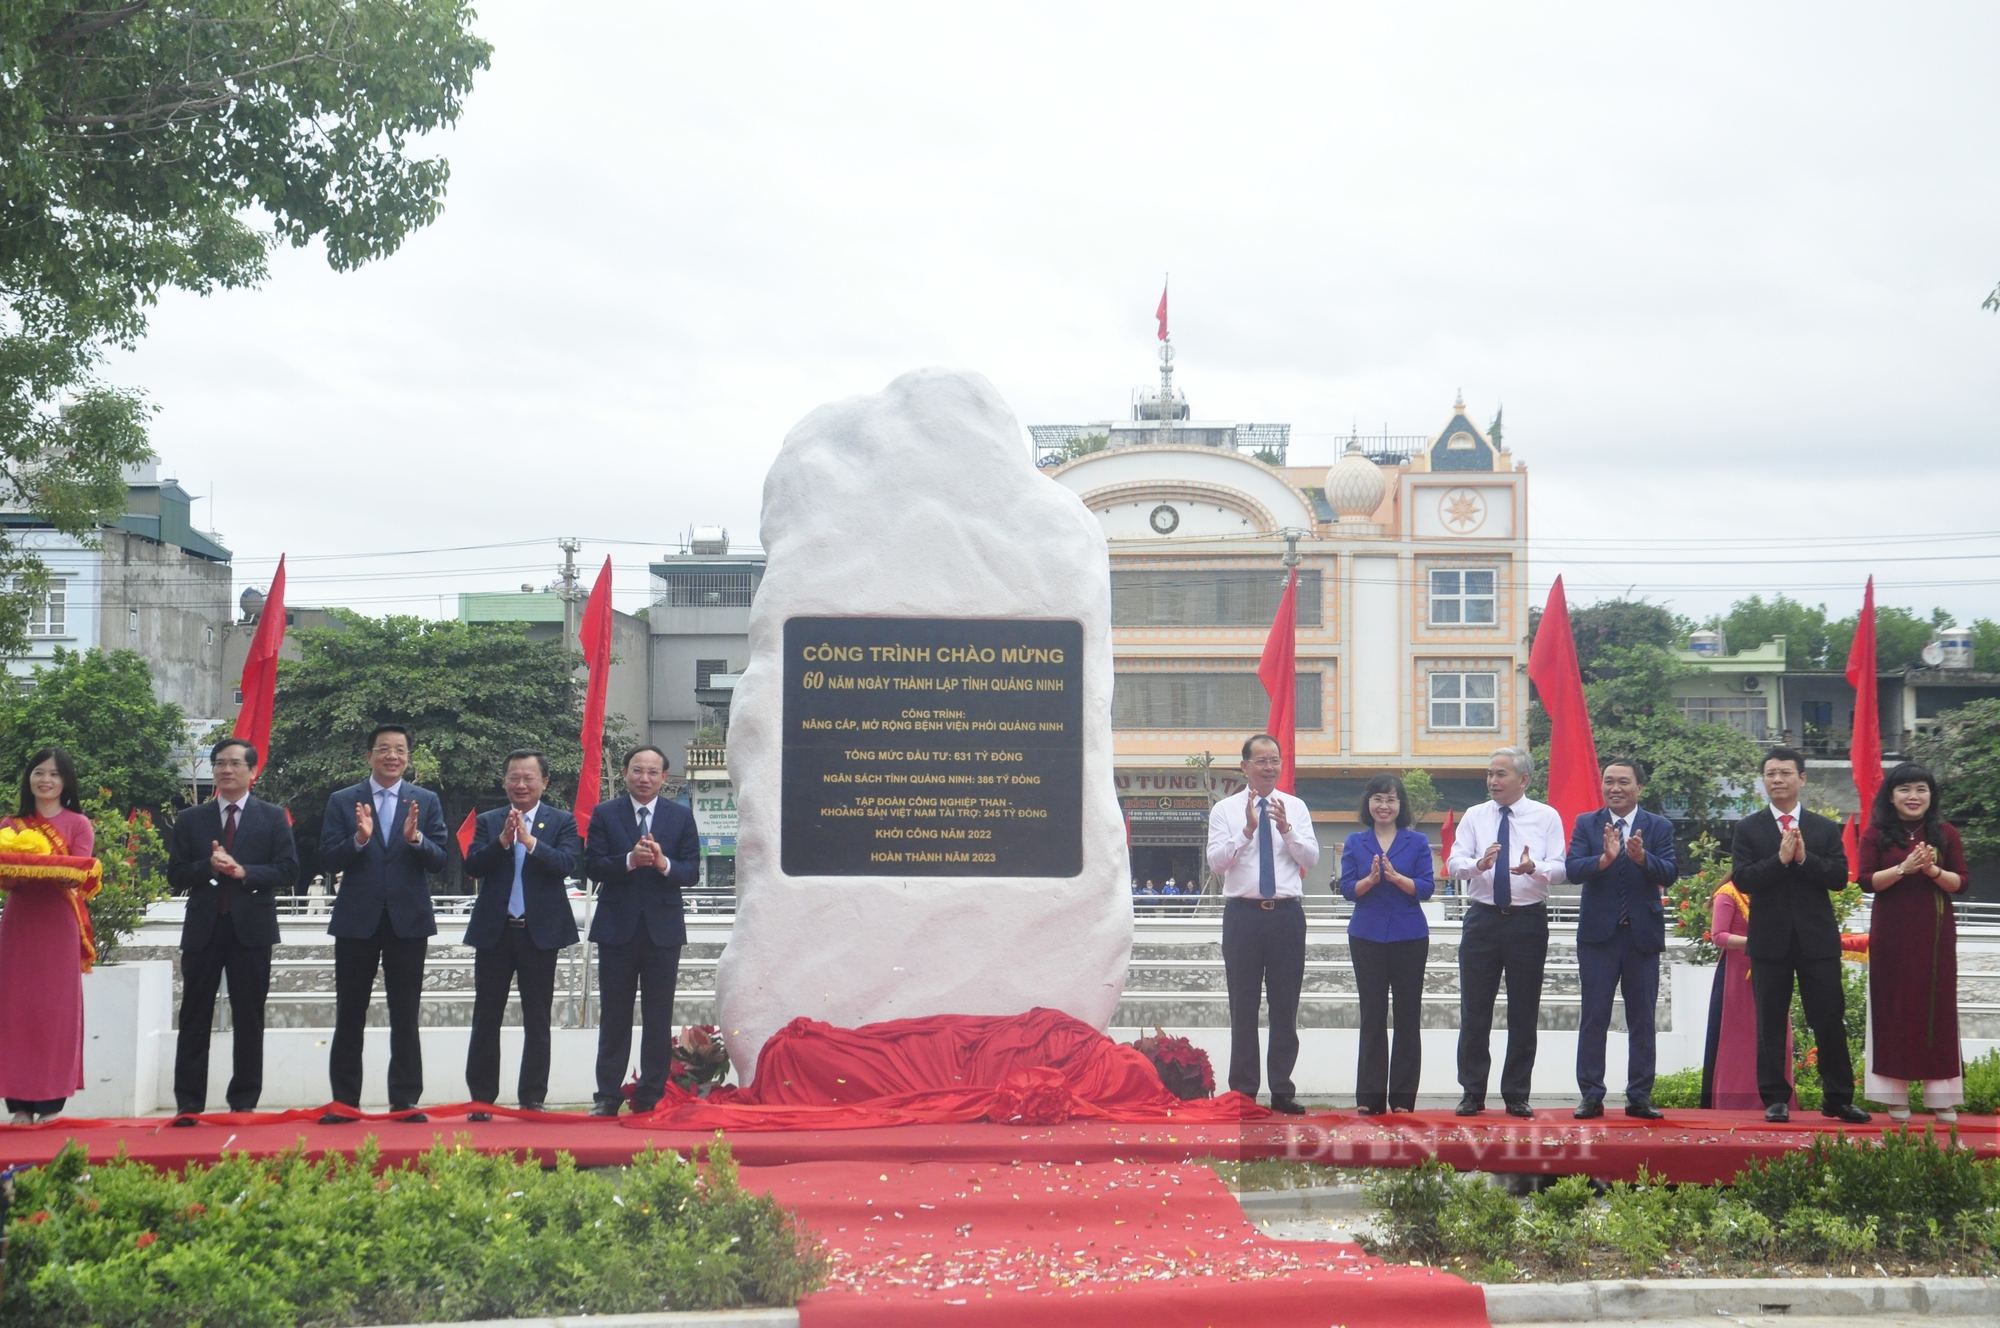 Quảng Ninh gắn biển loạt công trình chào mừng 60 năm Ngày thành lập tỉnh - Ảnh 3.